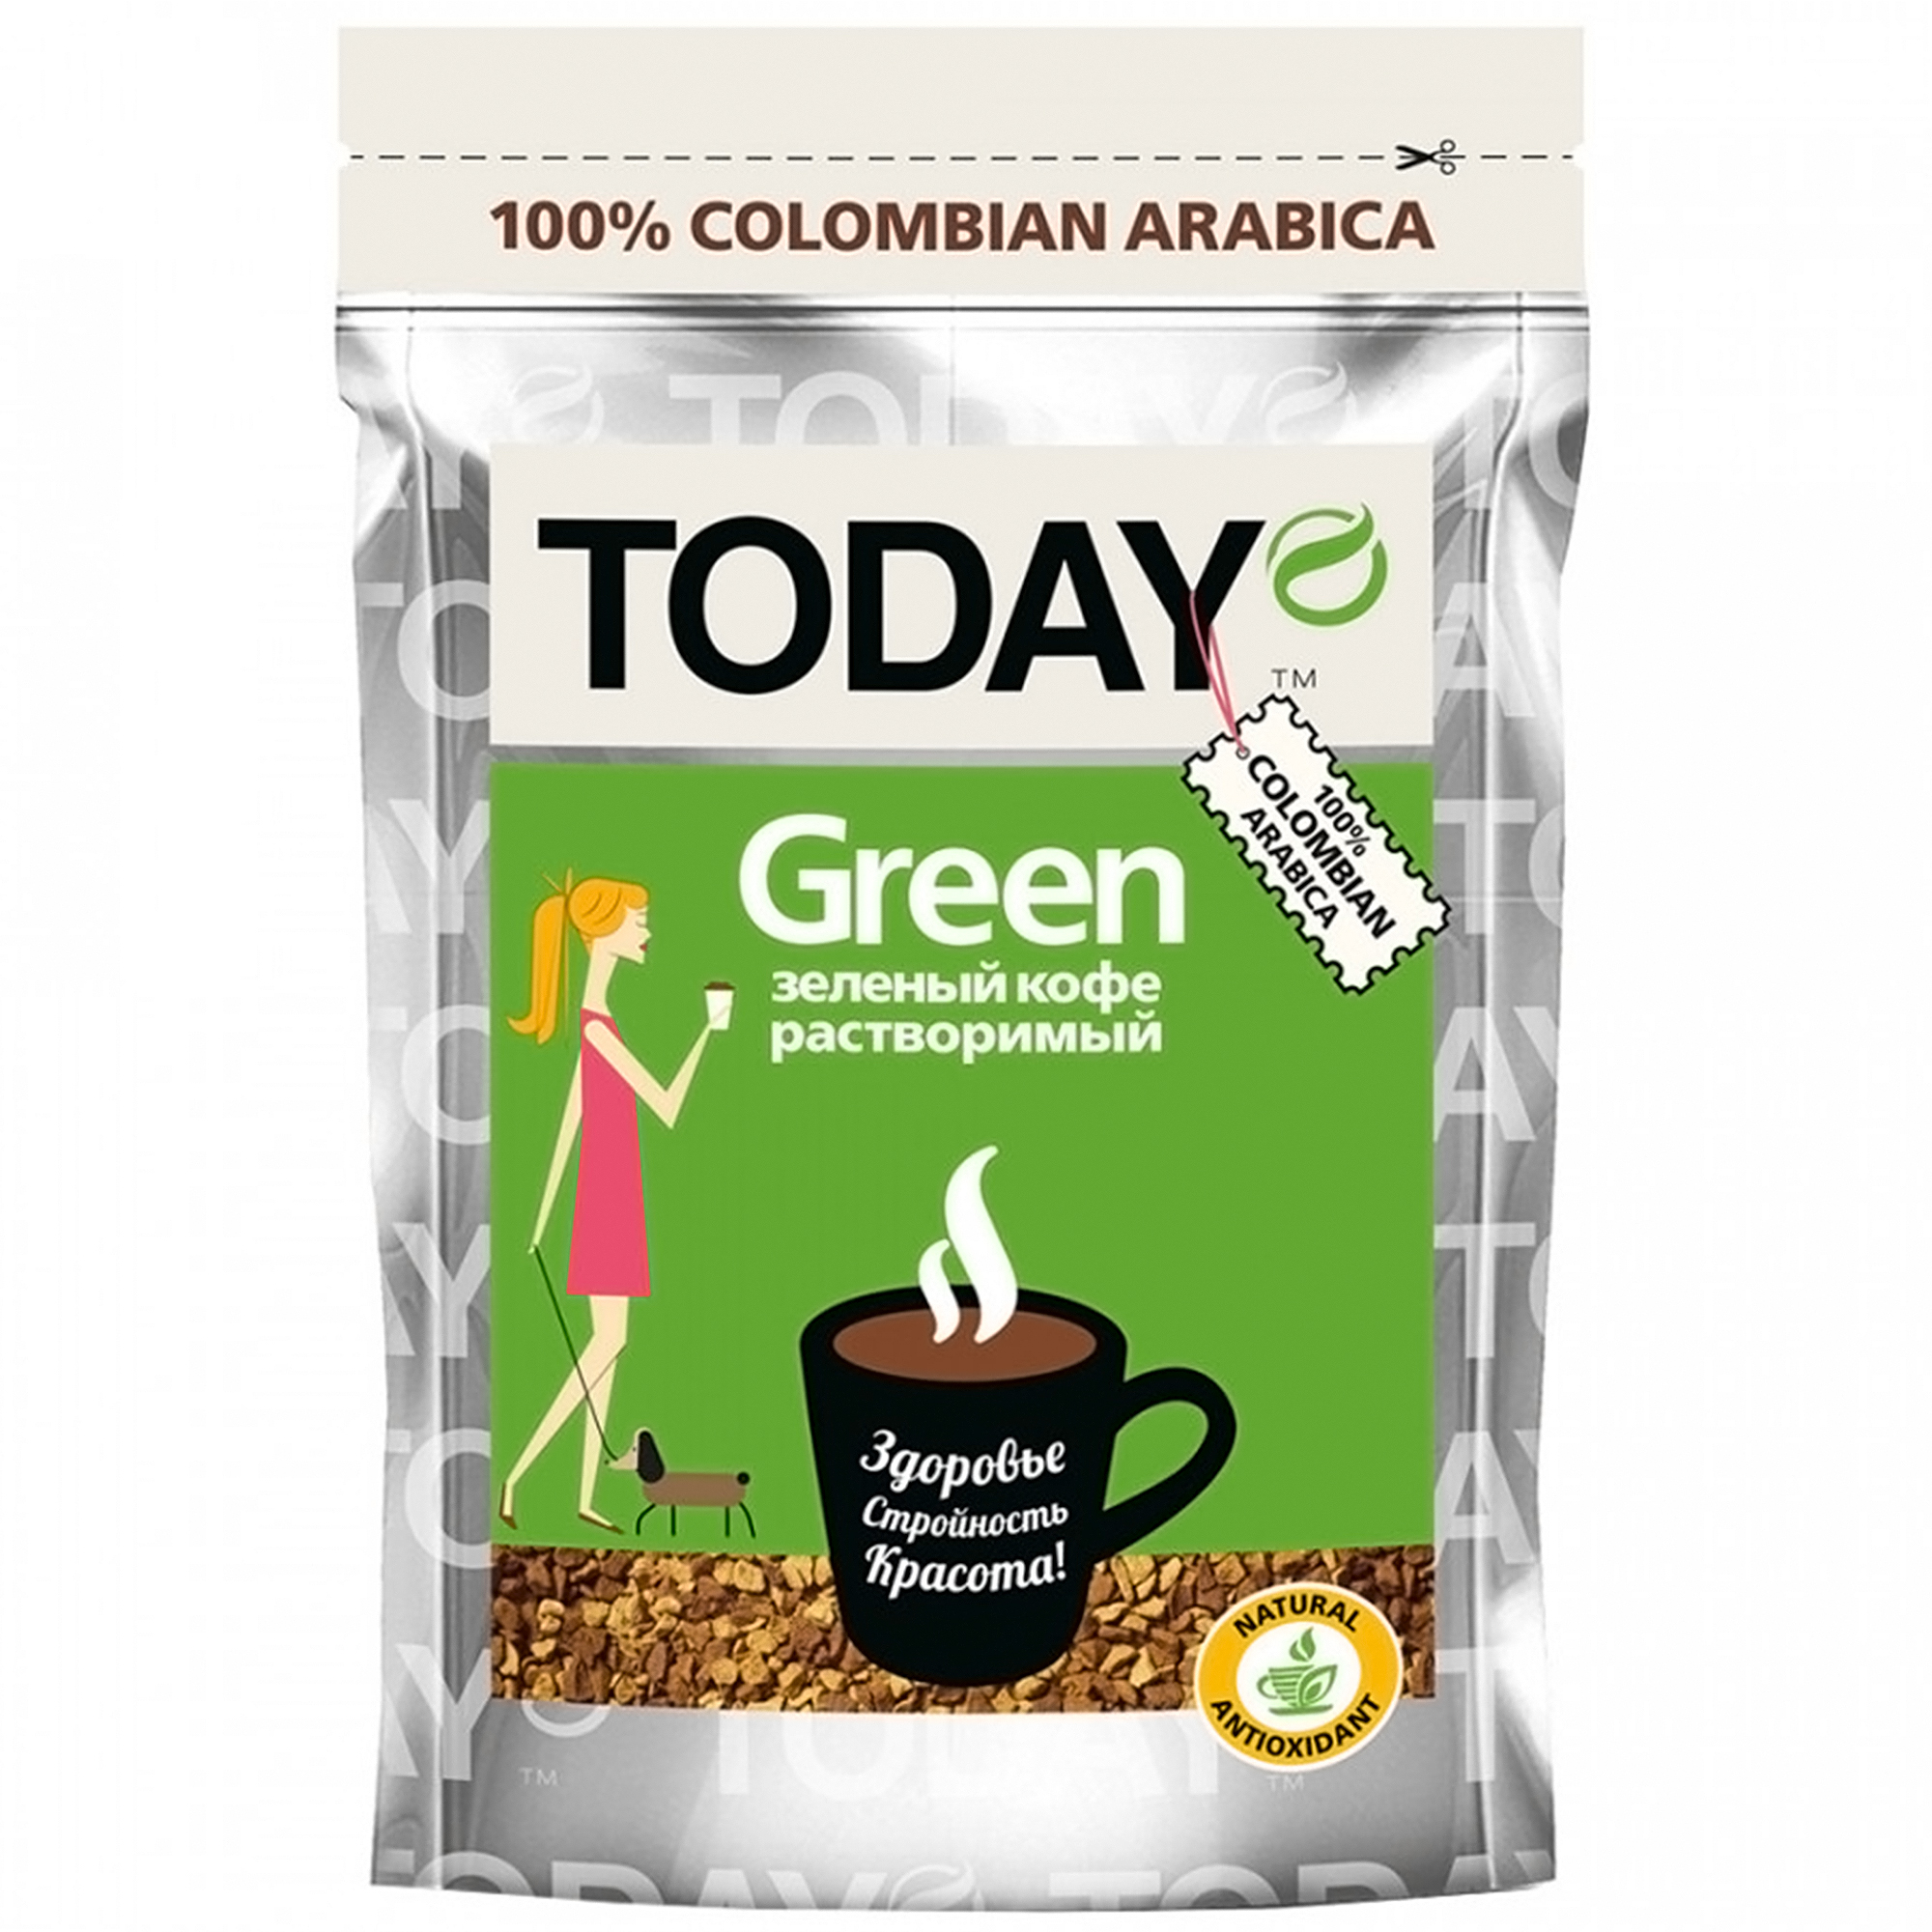 Кофе Today Green растворимый сублимированный, 75 г кофе растворимый today in fi 95 г